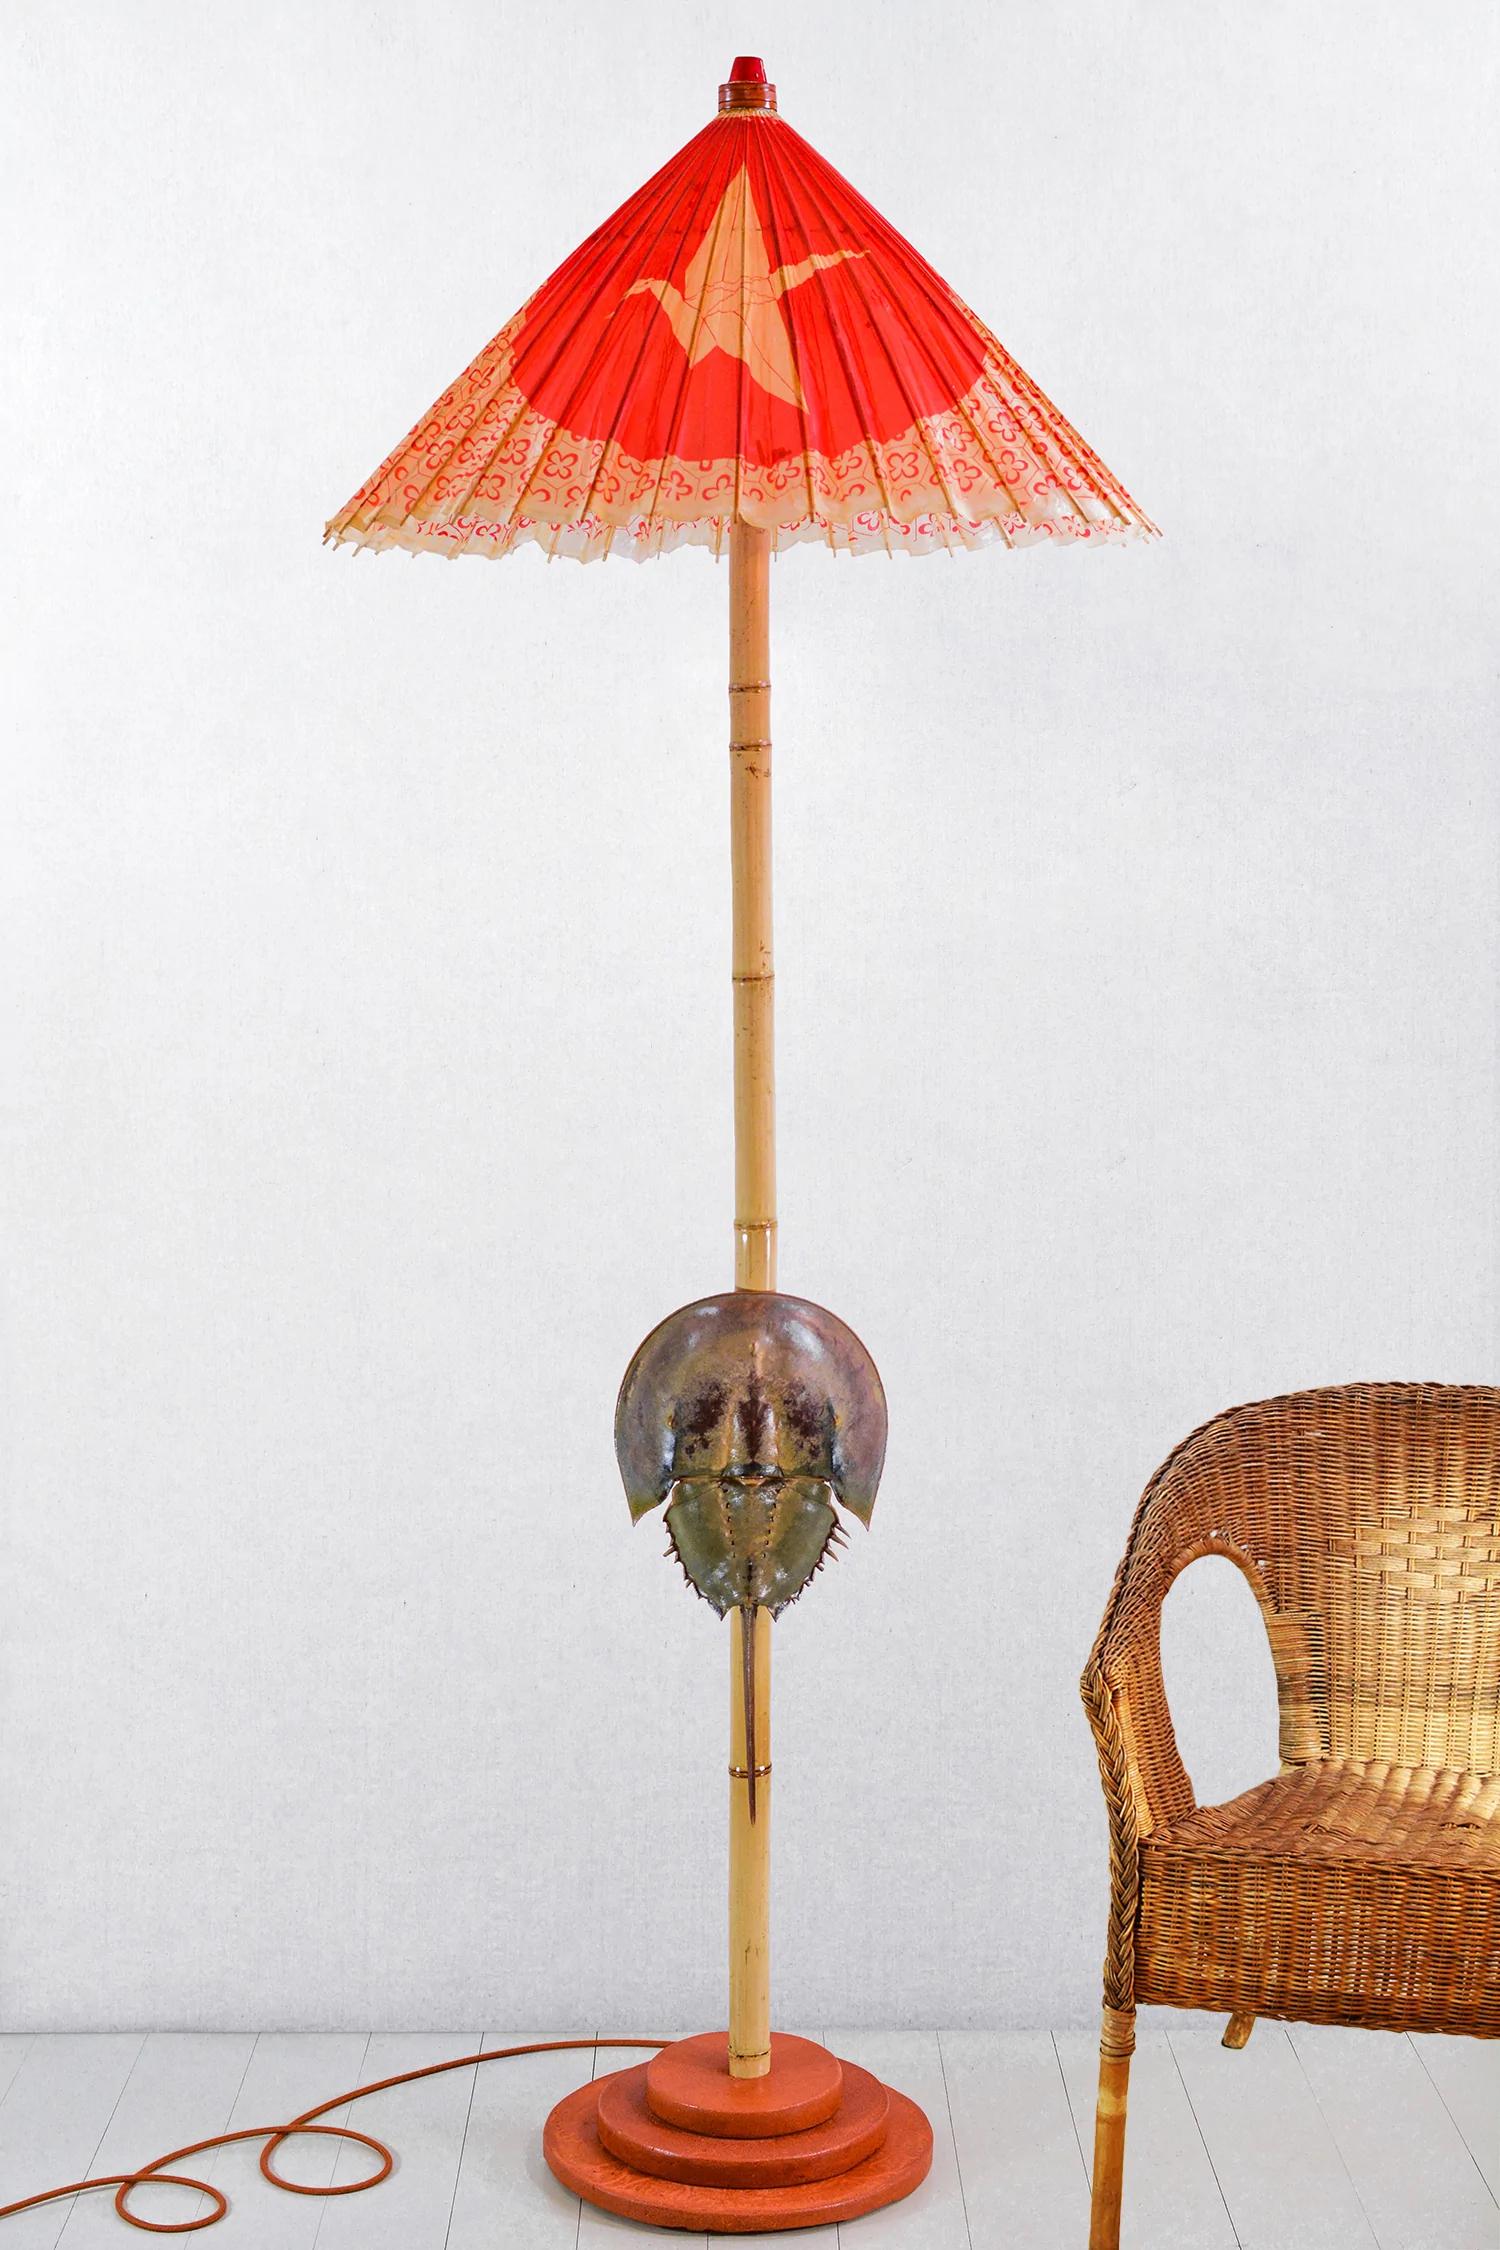 La Collection Vanderbilt comprend deux lampadaires monumentaux uniques en leur genre, issus de l'exposition personnelle de Christopher Tennant au Vanderbilt Museum de Long Island (New York) en 2022, inspirés des goûts et des excentricités du